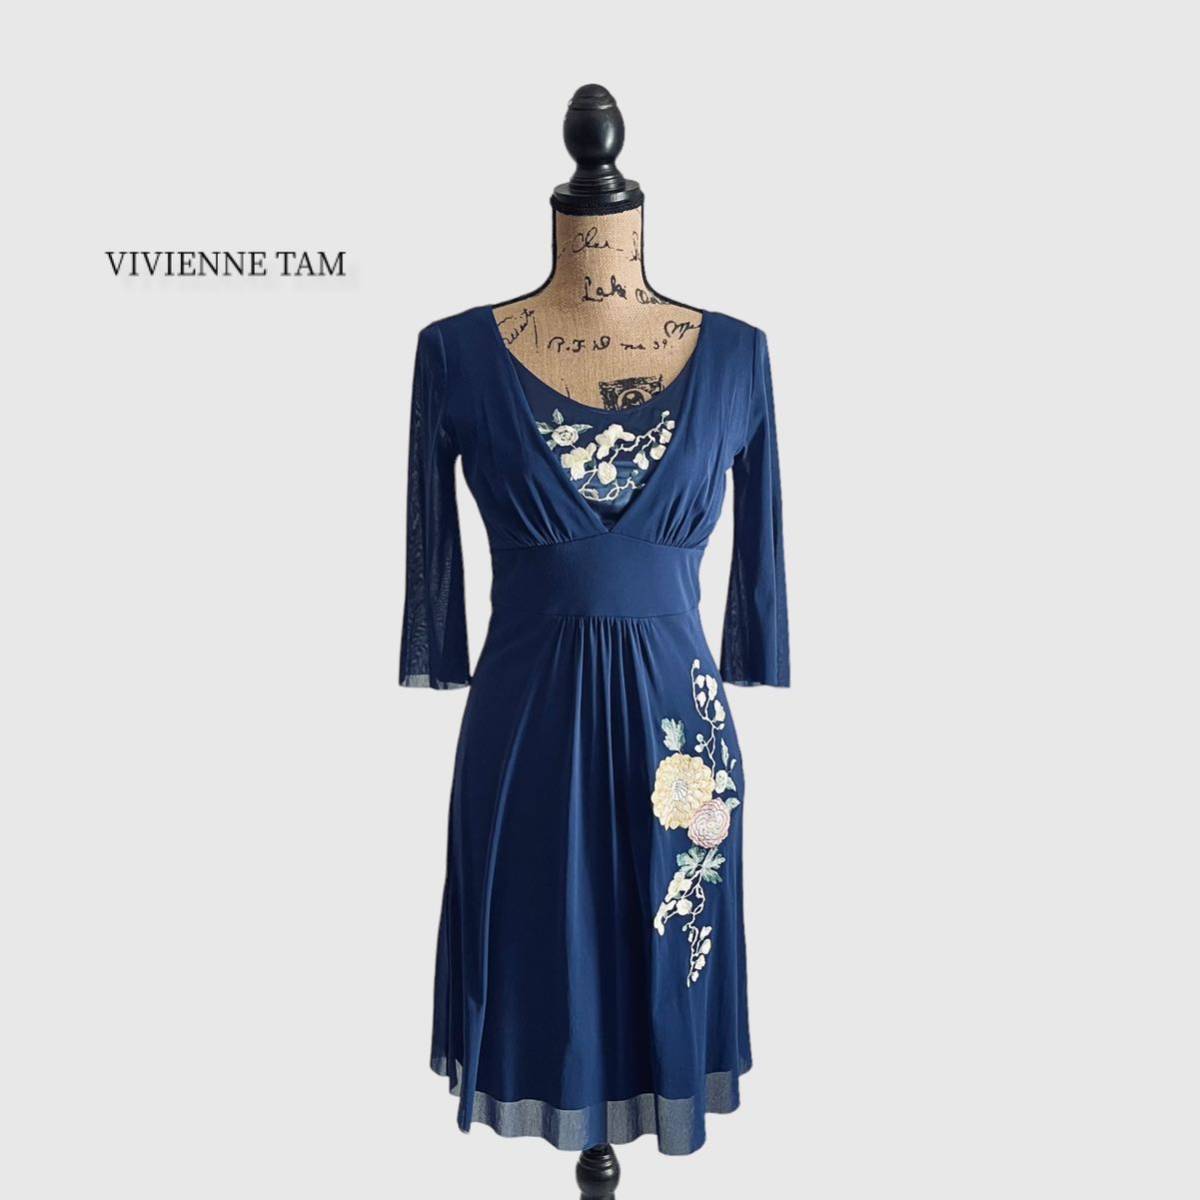 人気デザイナー VIVIENNE 刺繍 ドレス ワンピース ヴィヴィアンタム